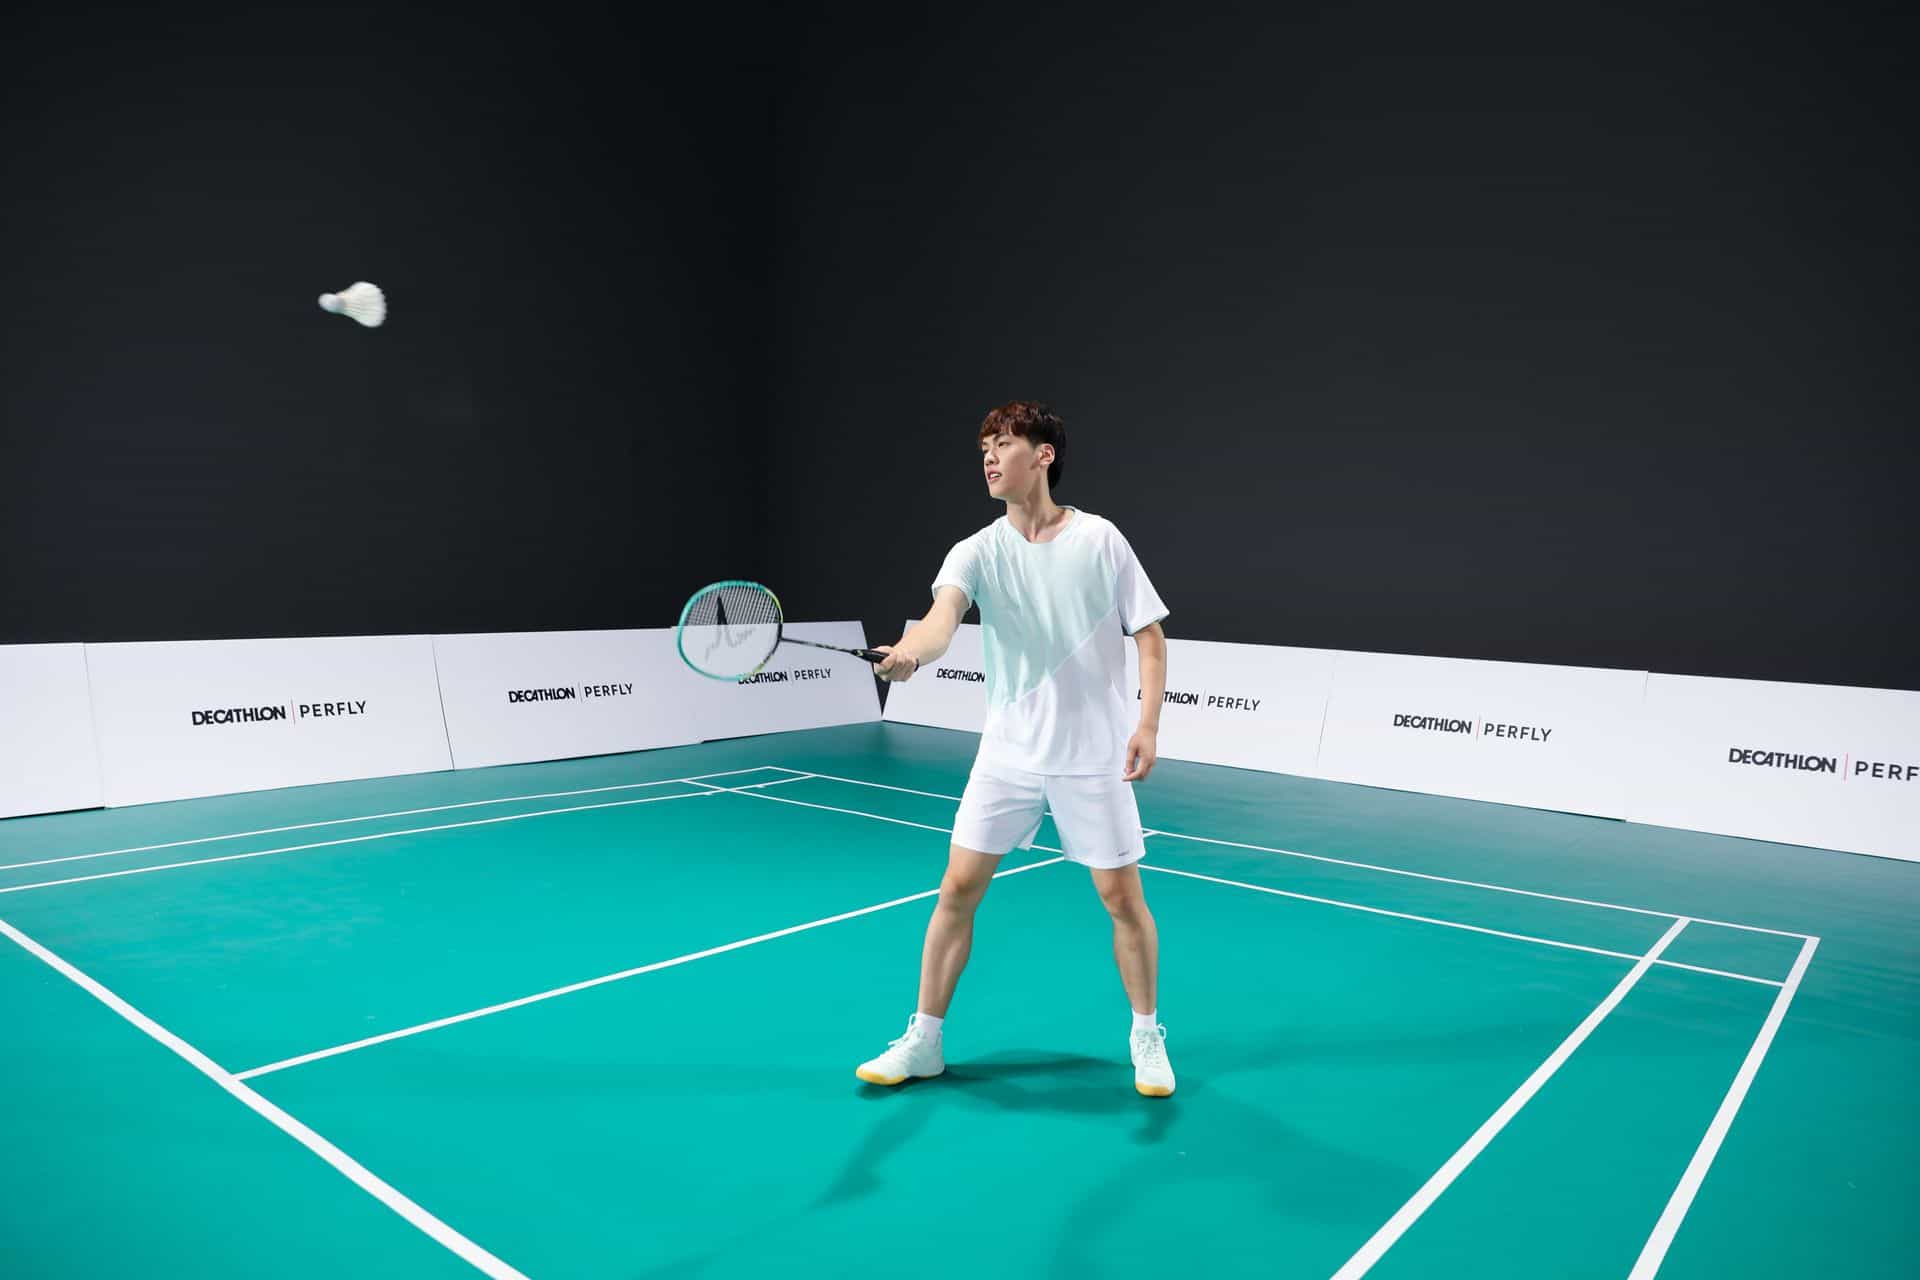 Wymiary boiska do badmintona - jakie są prawidłowe wymiary boiska?